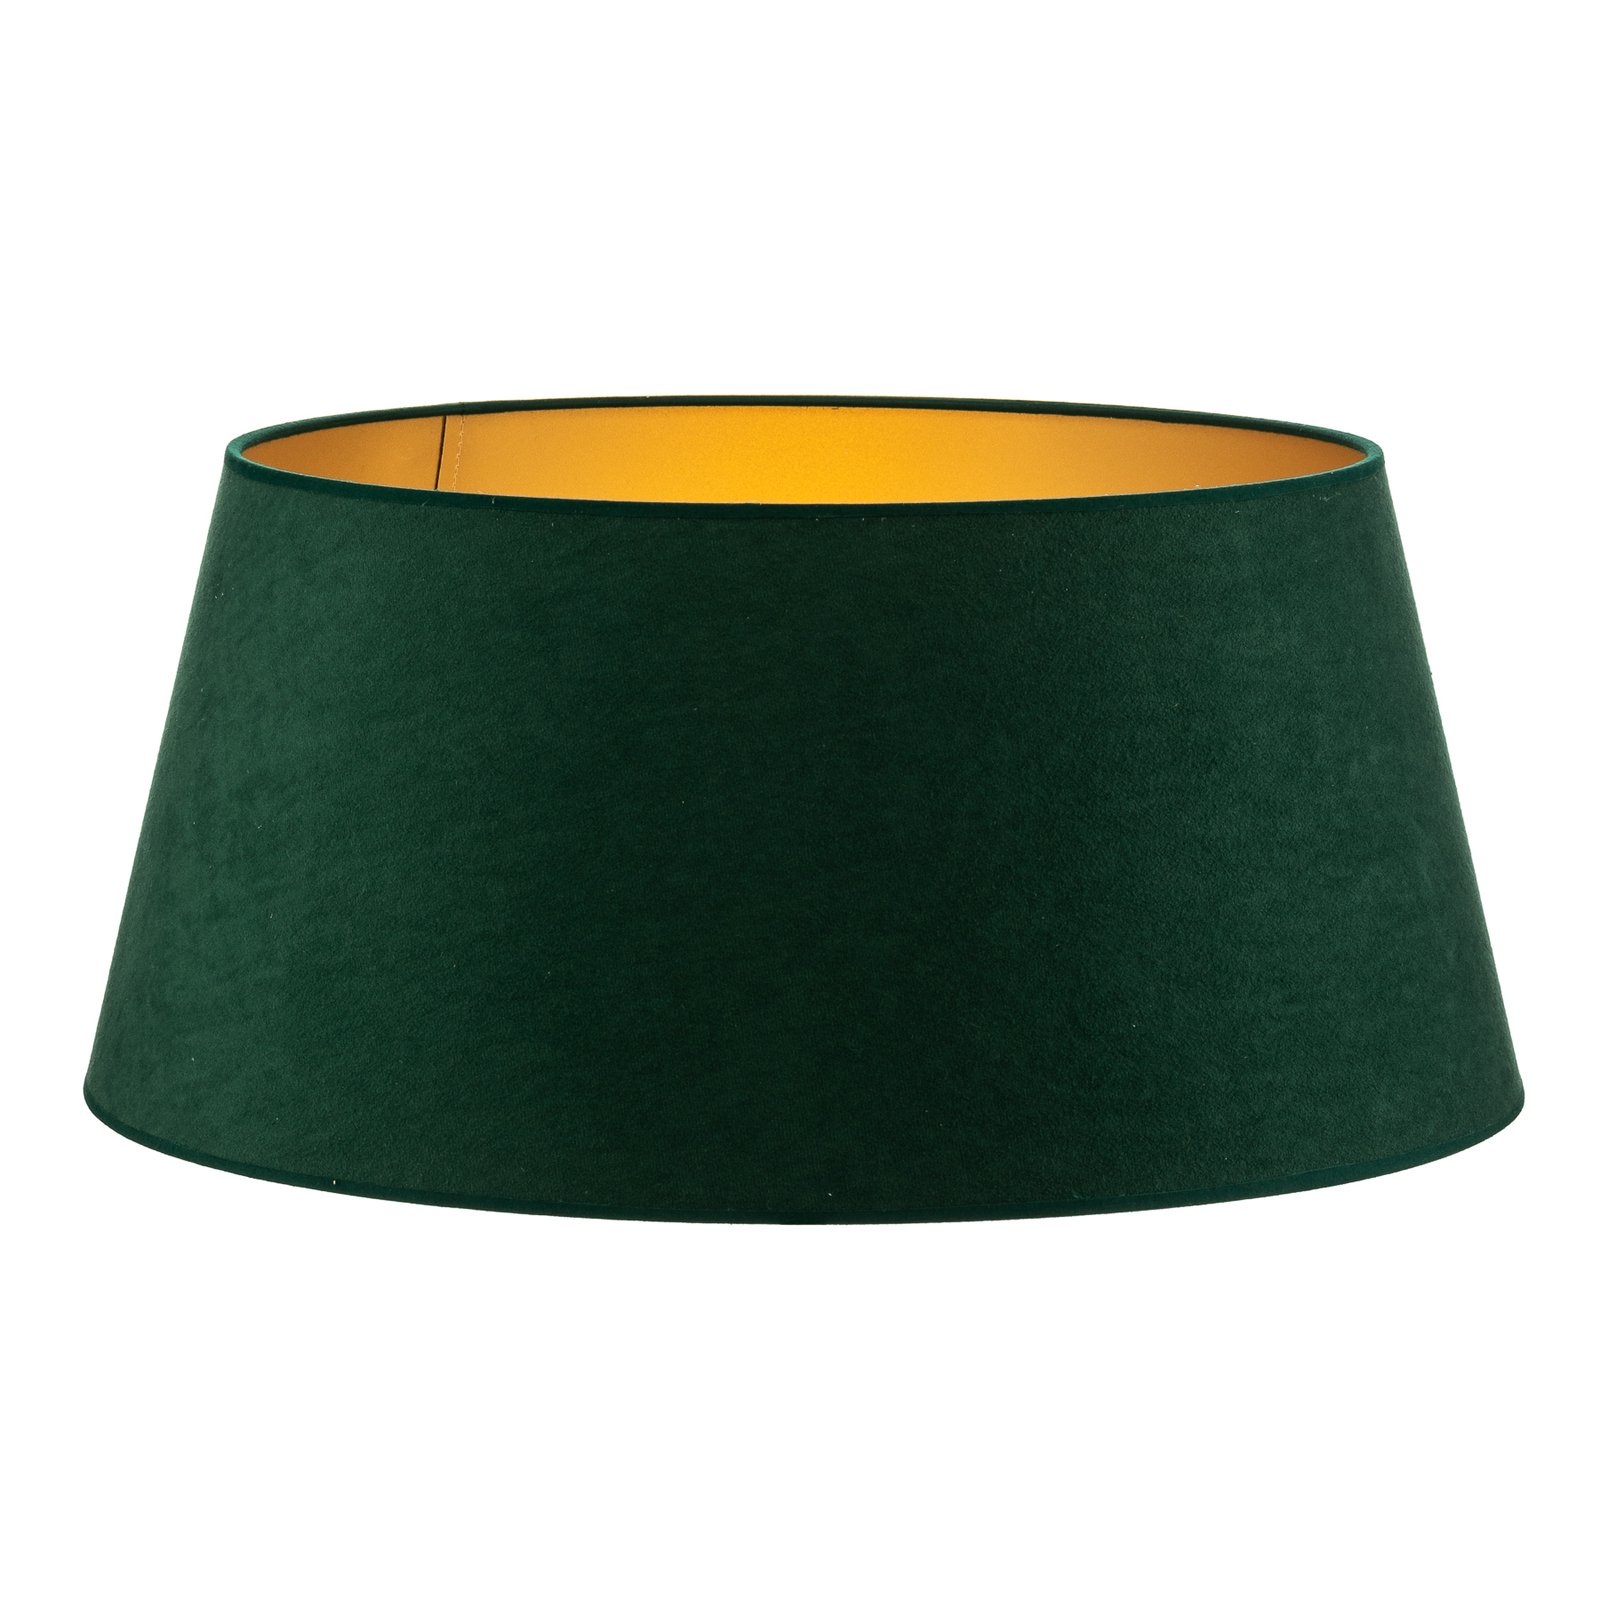 Cone lampeskærm, højde 25,5 cm, mørkegrøn/guld